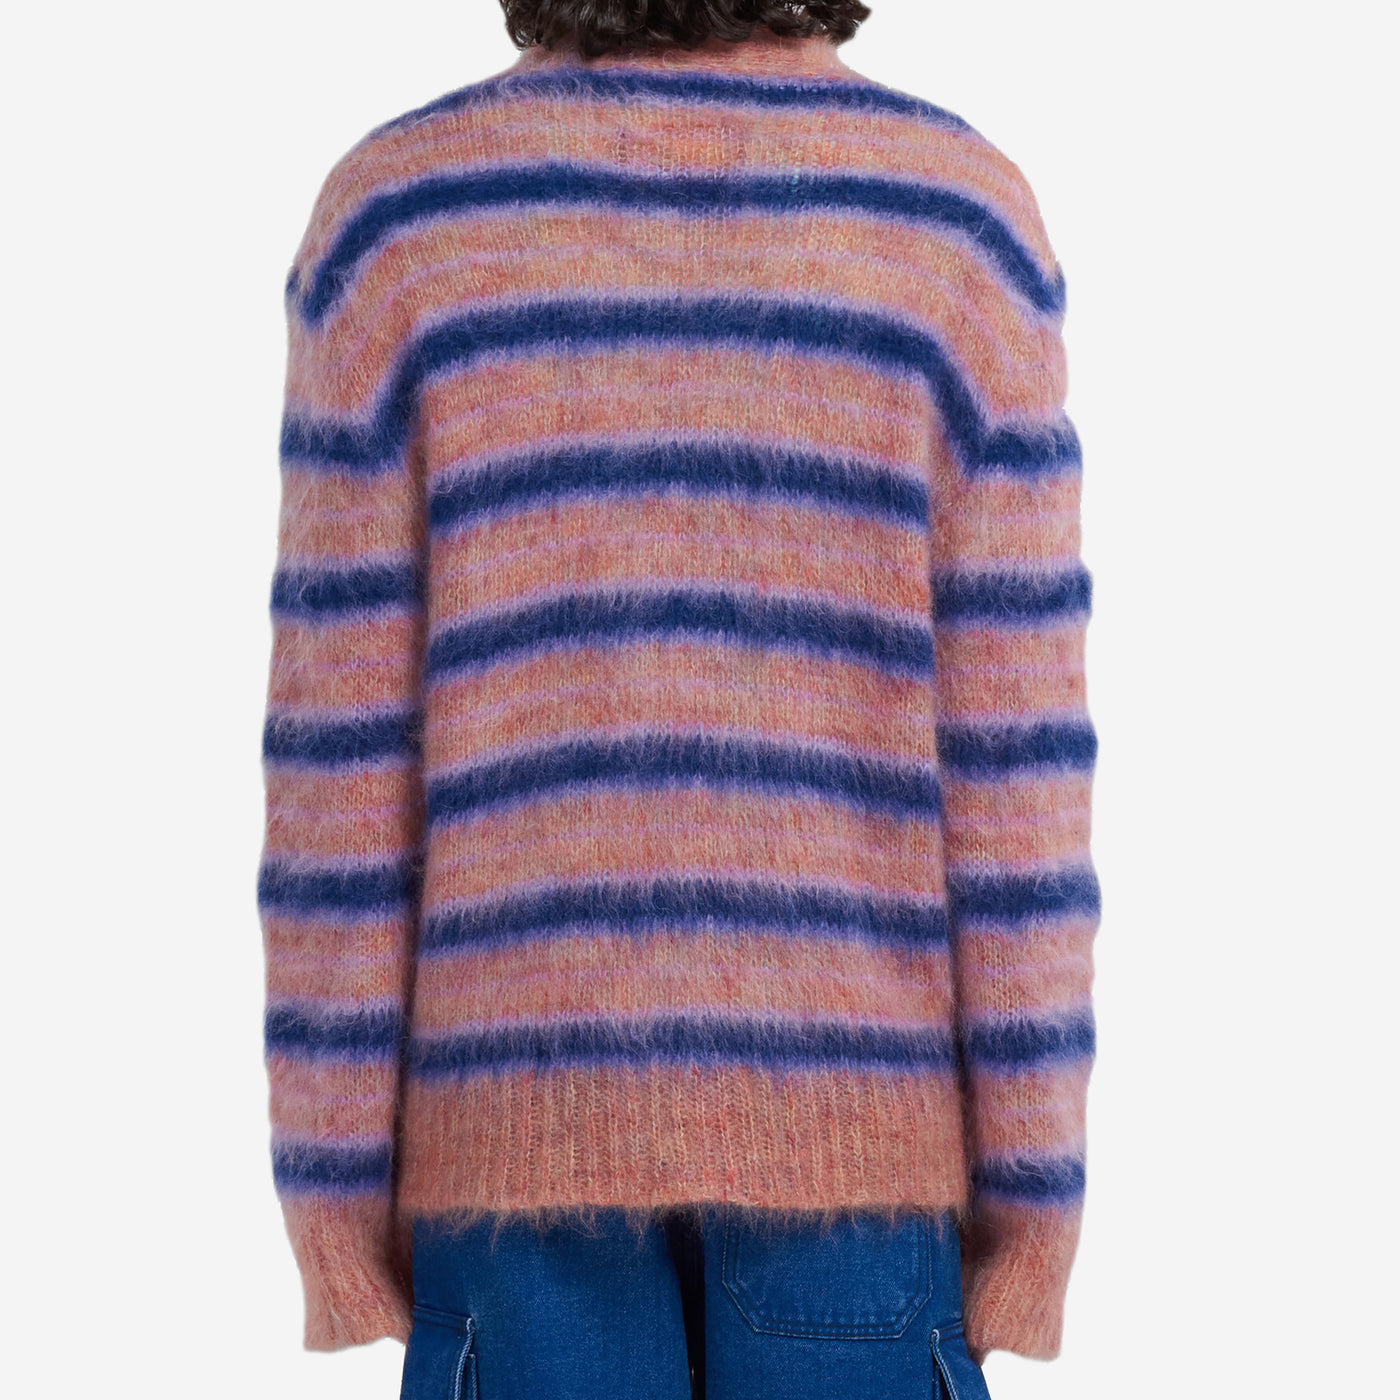 Marni Fuzzy Wuzzy Striped Cardigan